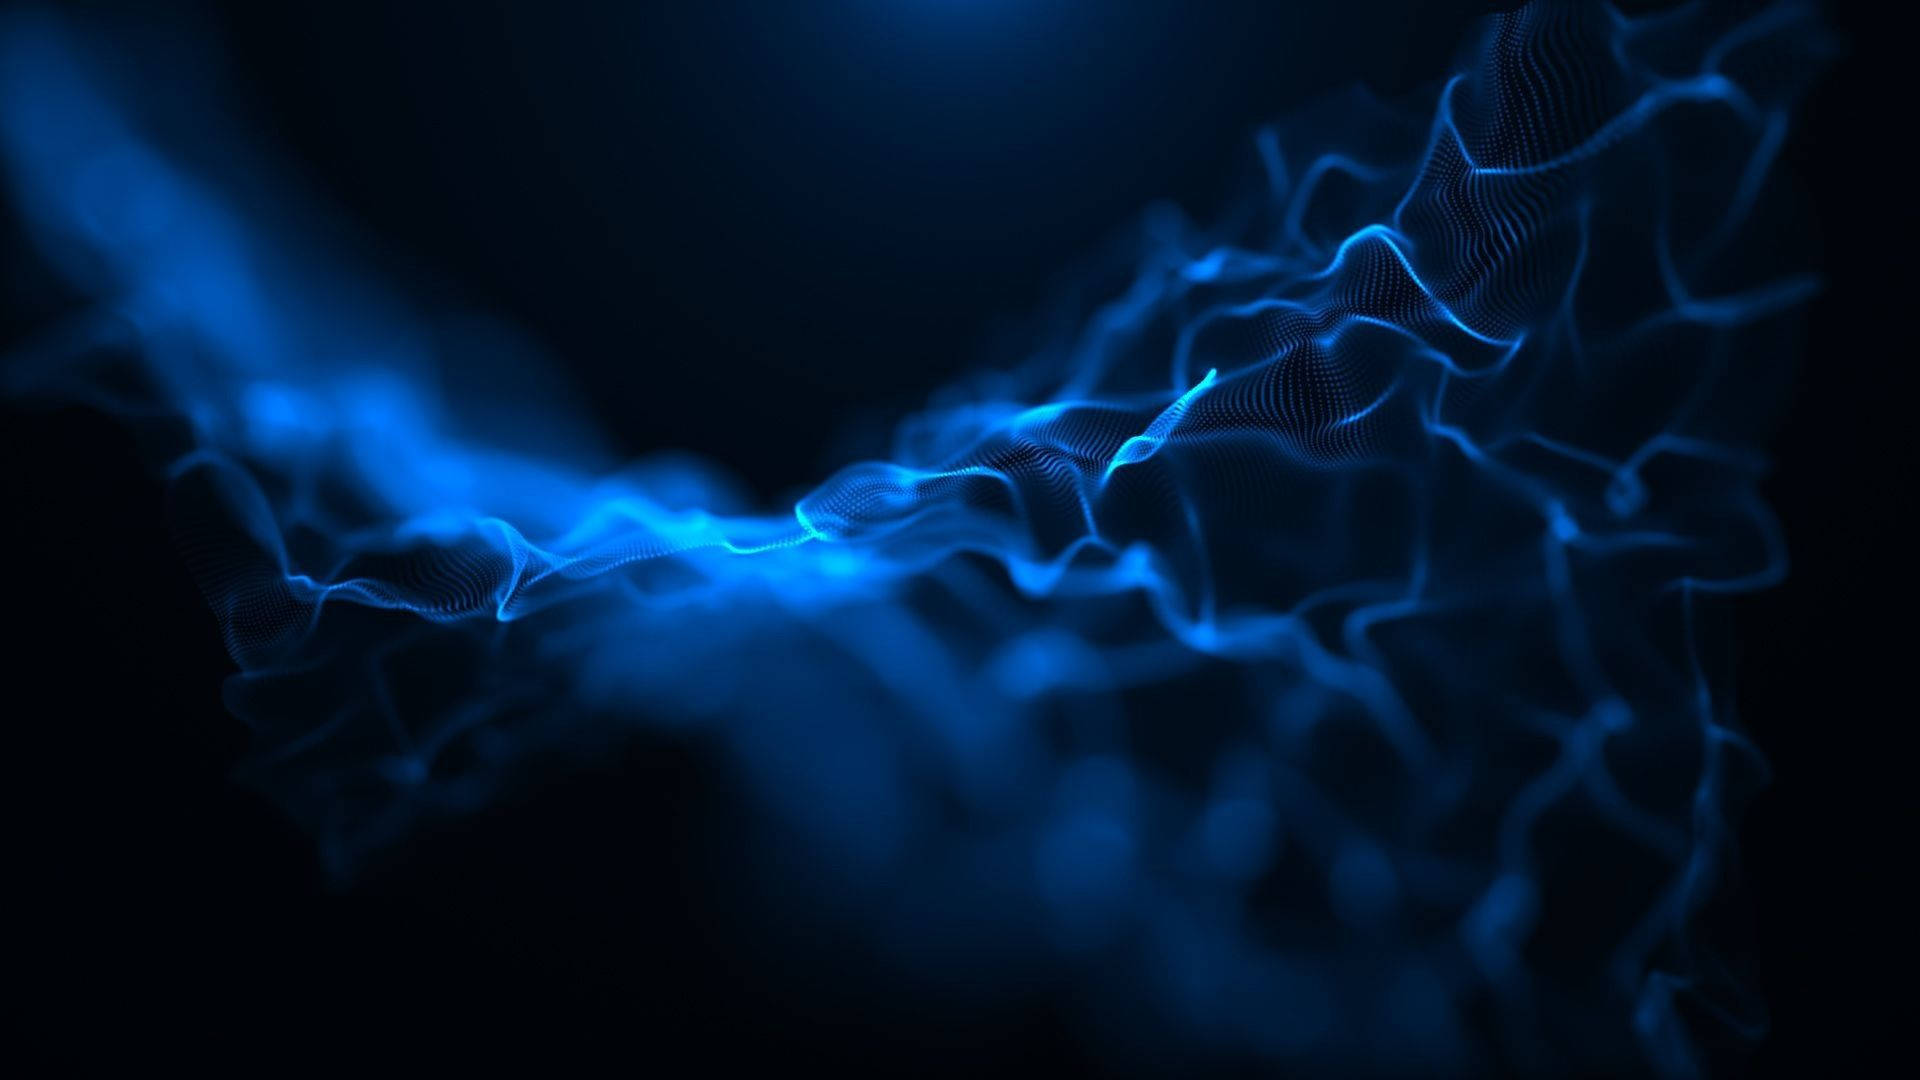 Neon Blue Aesthetic Smoke Art Background